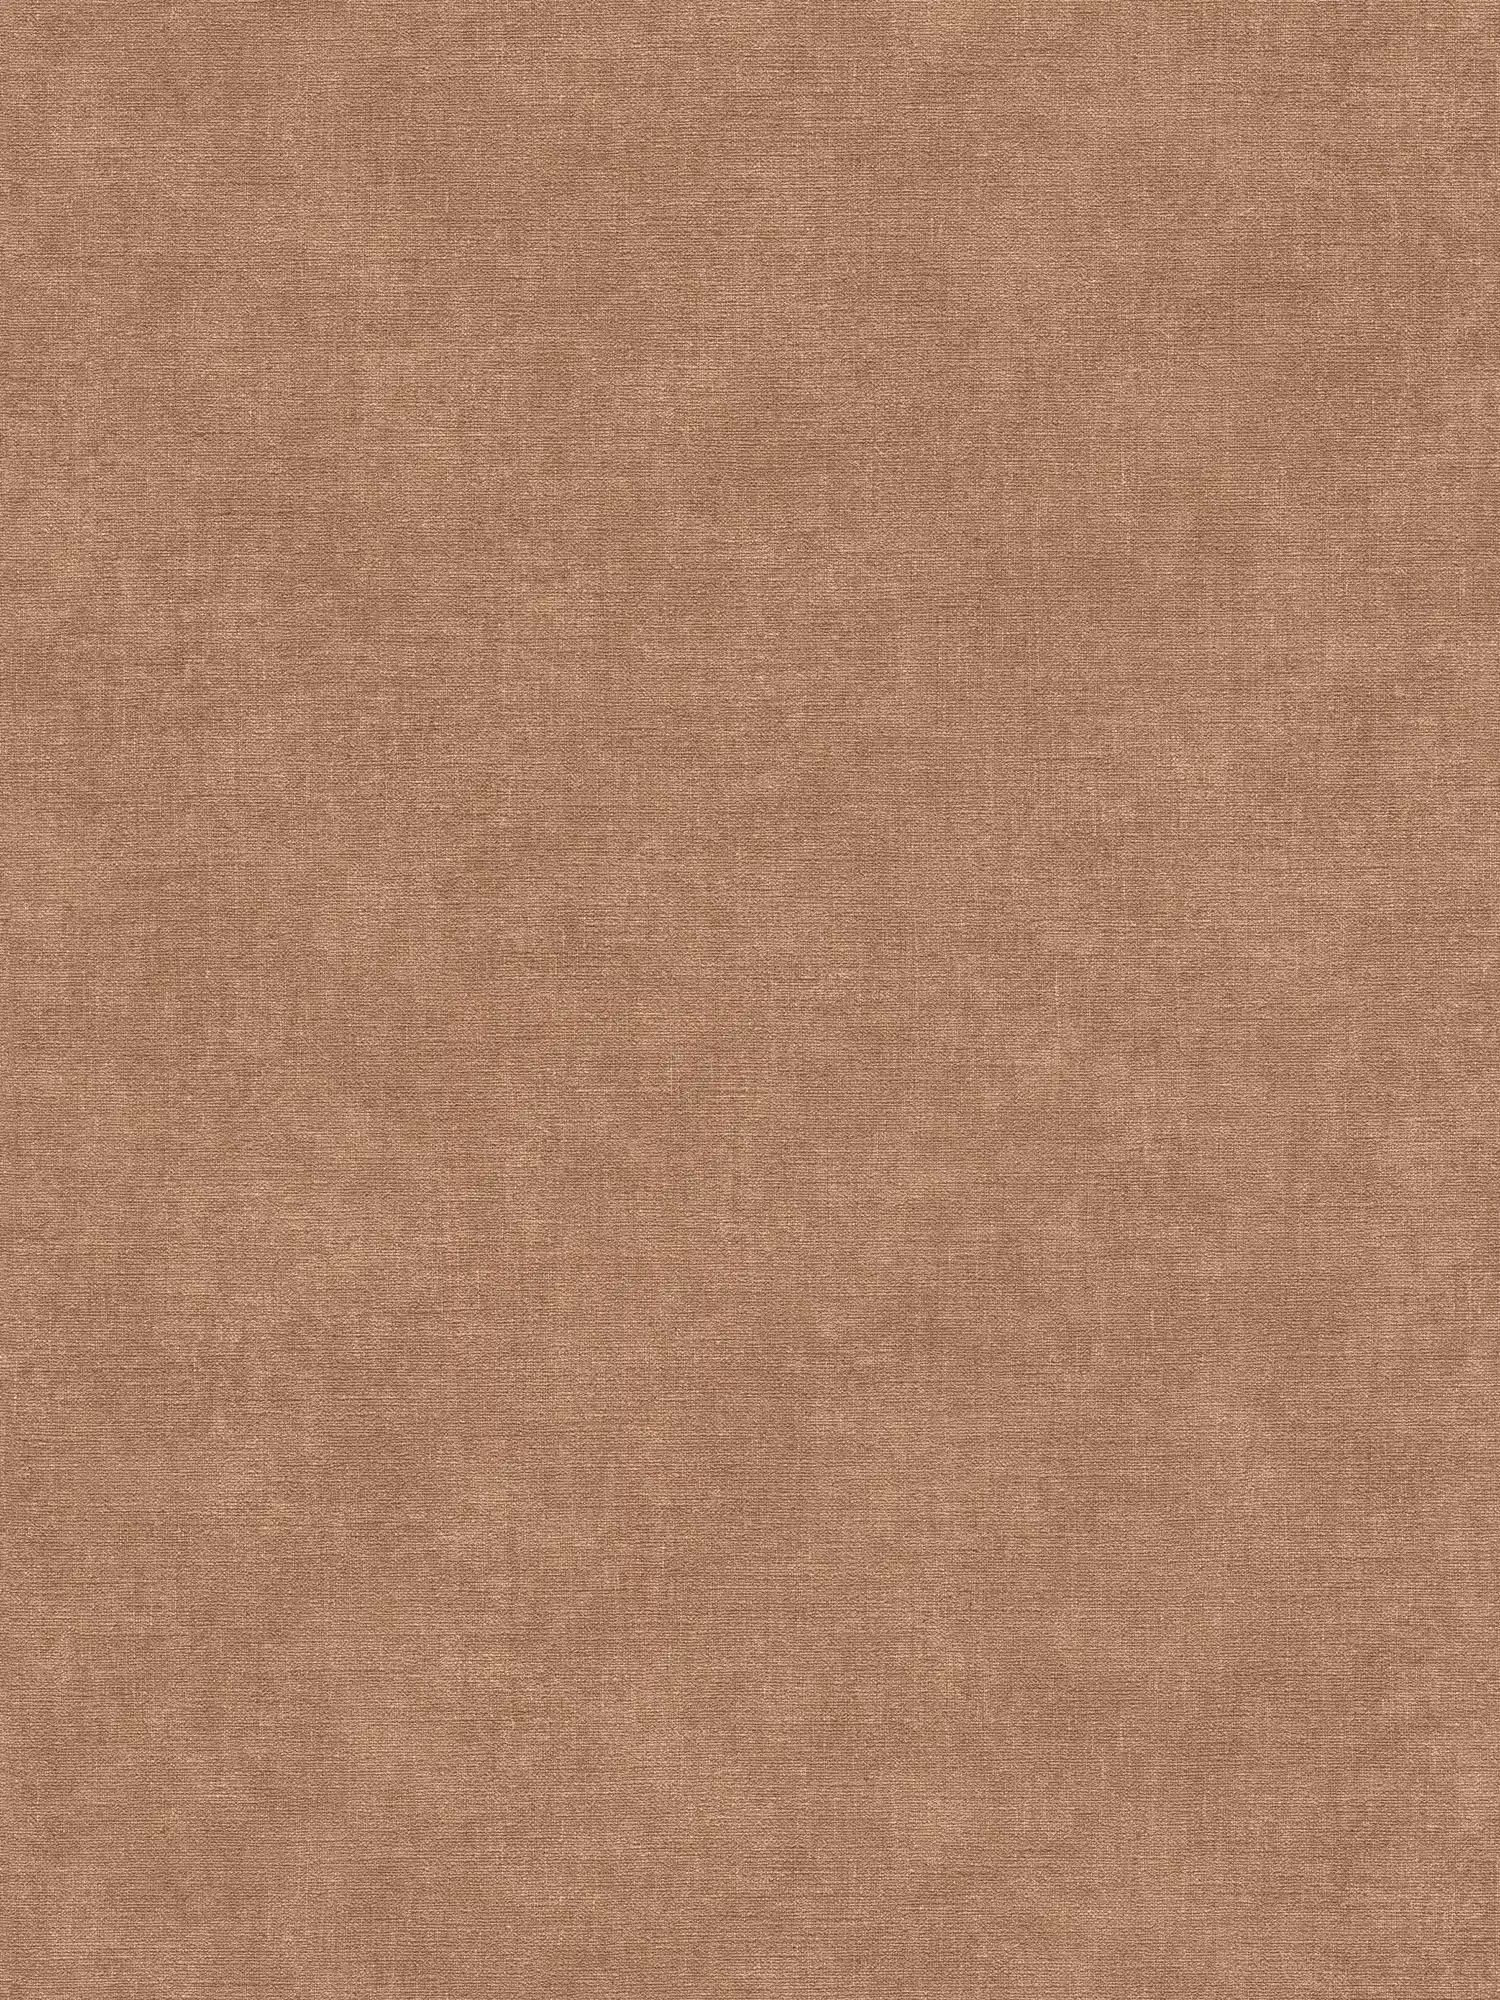 papier peint en papier intissé imitation crépi uni - marron, orange
